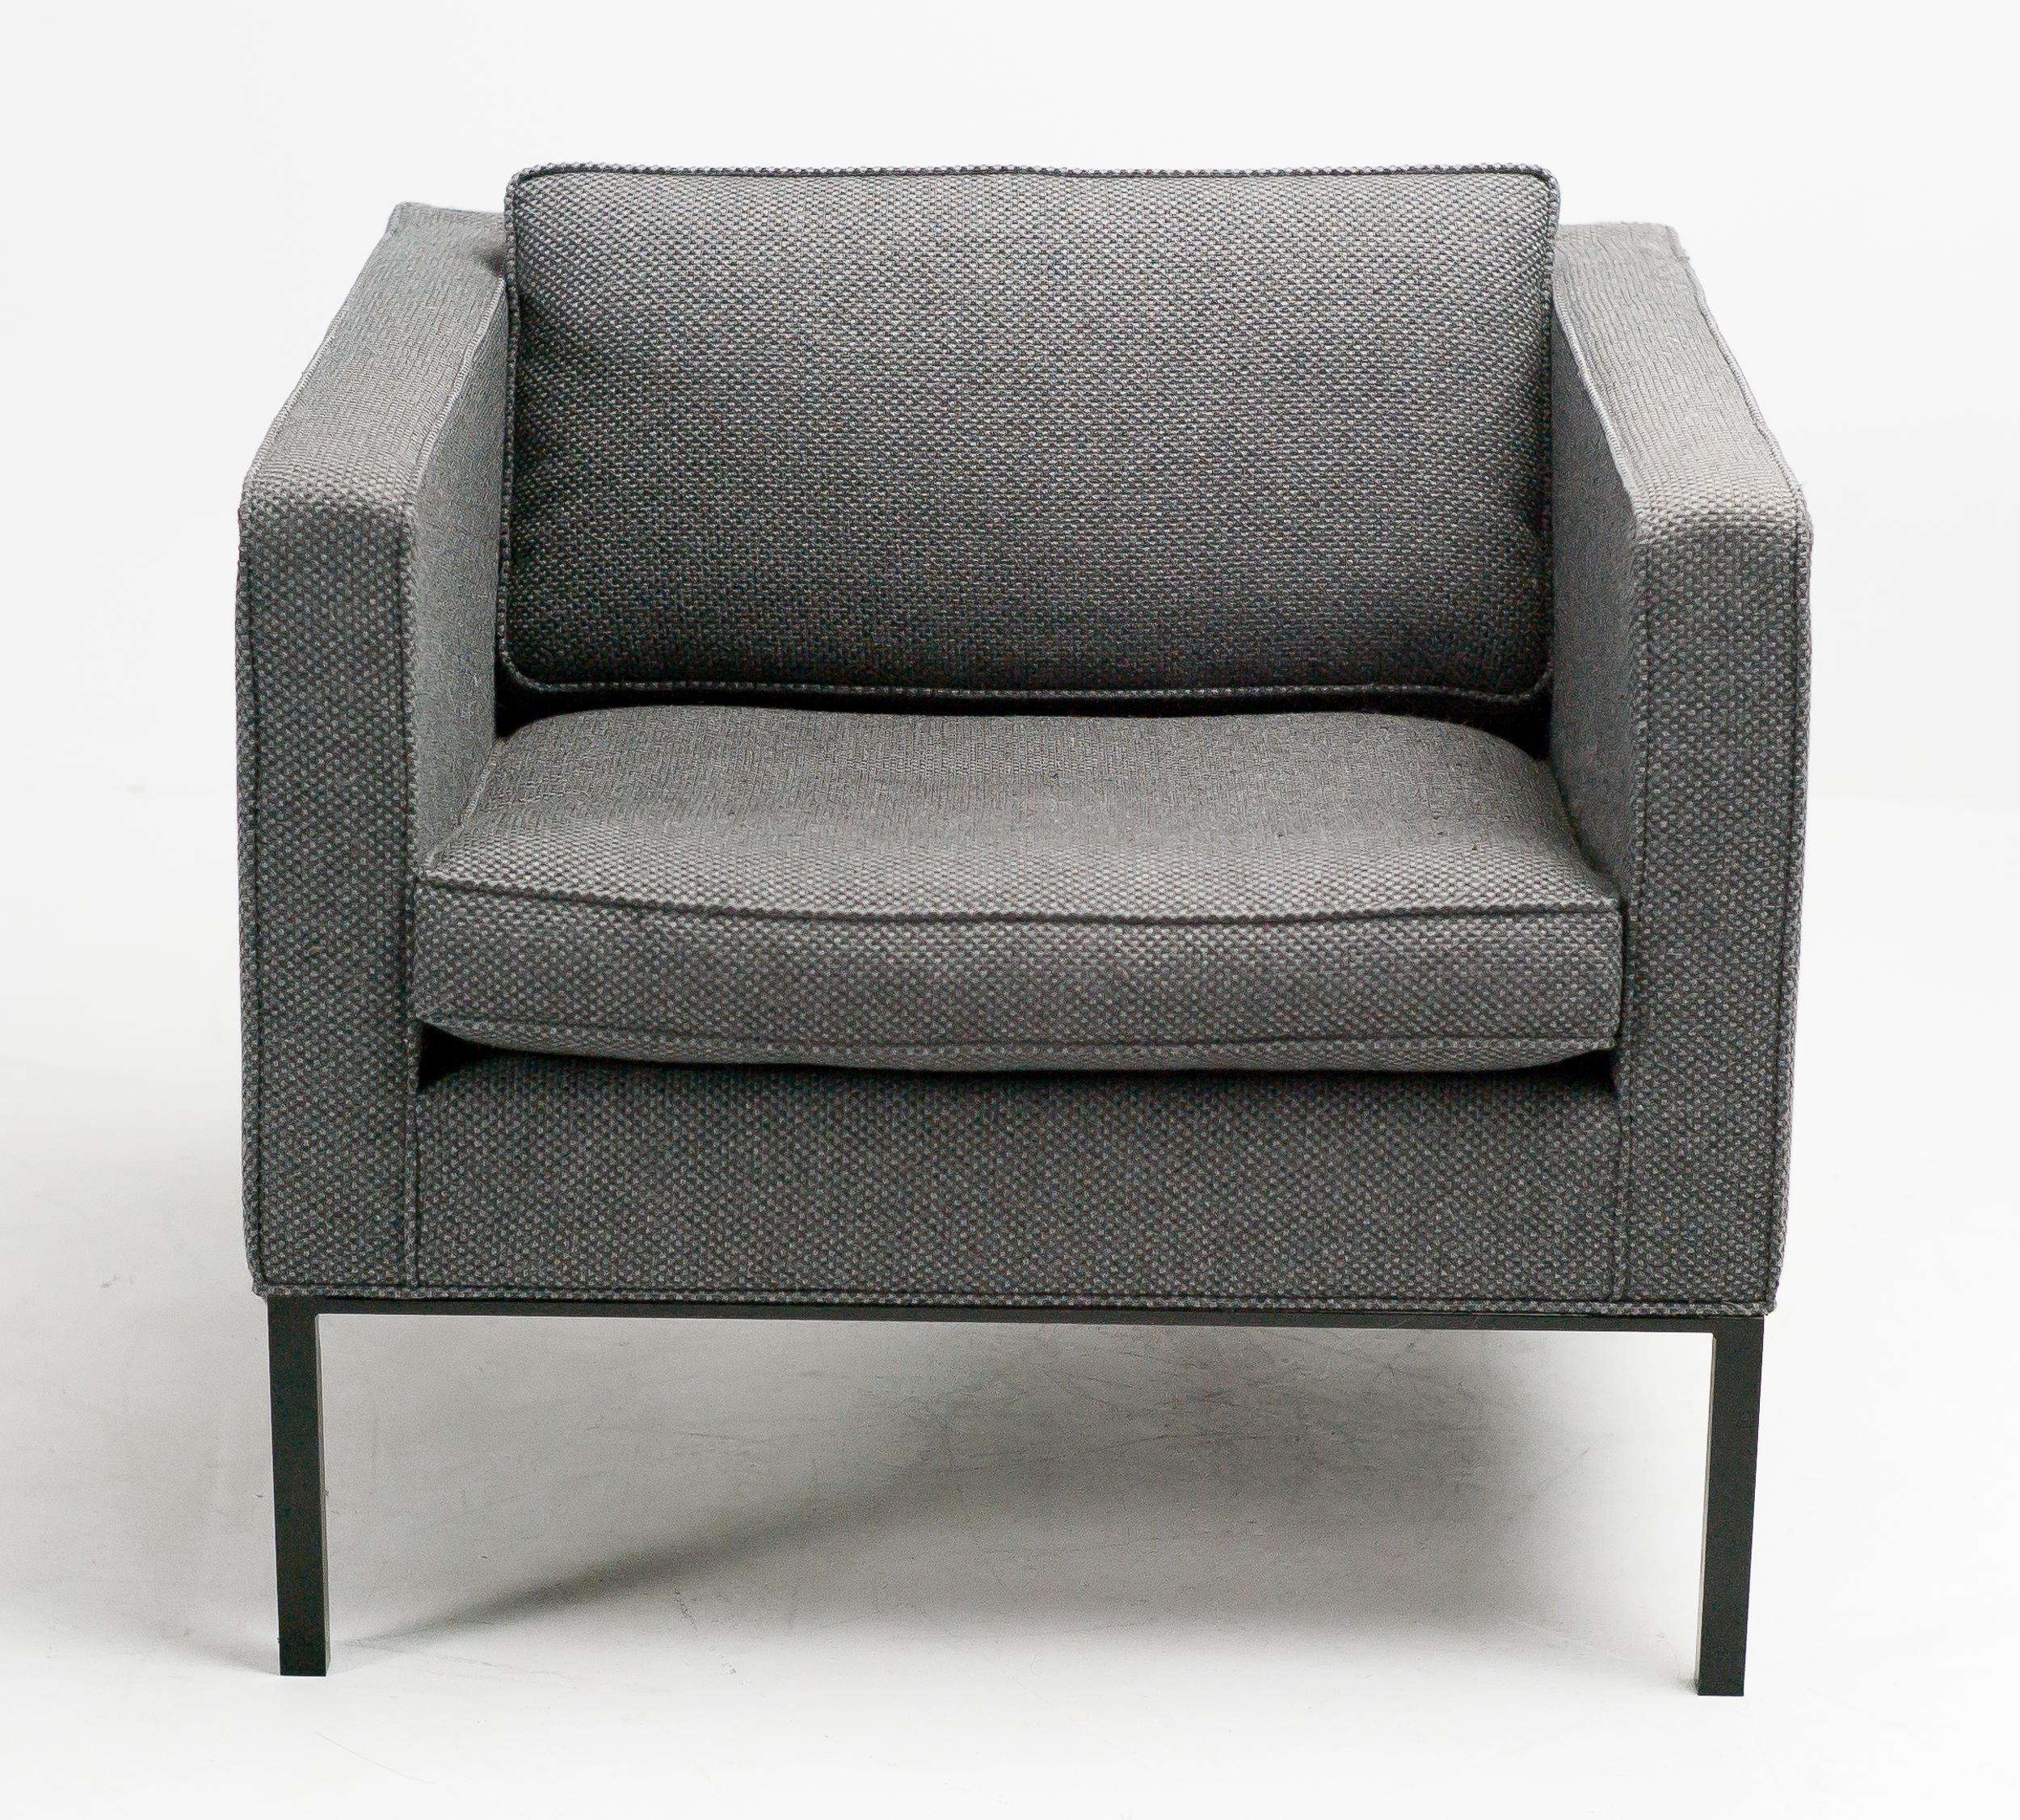 Artifort 905 Loungesessel des Artifort-Designteams unter der Leitung von Kho Lian Ie, 1964.
Gepolstert mit einem zweifarbigen, dunkelgrau/schwarzen Wollstoff De Ploeg.
Dieser Stuhl wurde in einem Sitzungssaal einer Bank verwendet.
Auf dem Boden